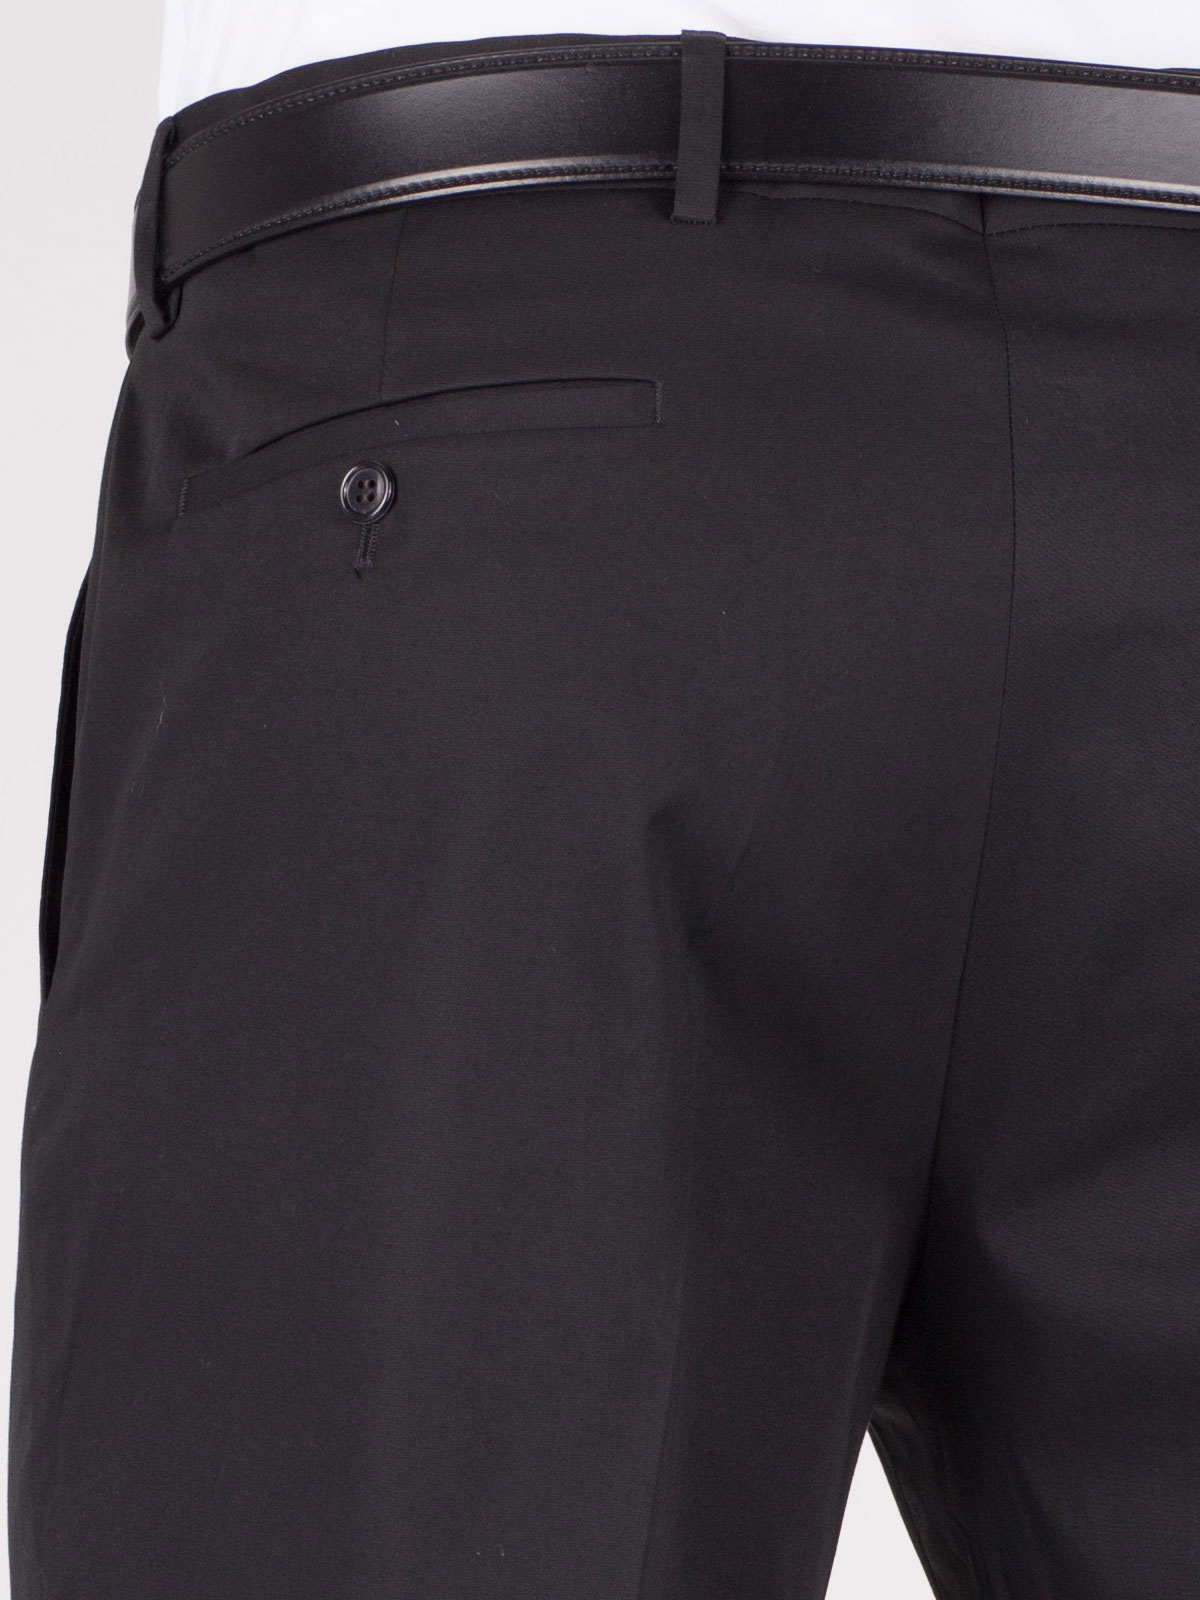 Pants black classic - 63002 € 16.31 img3